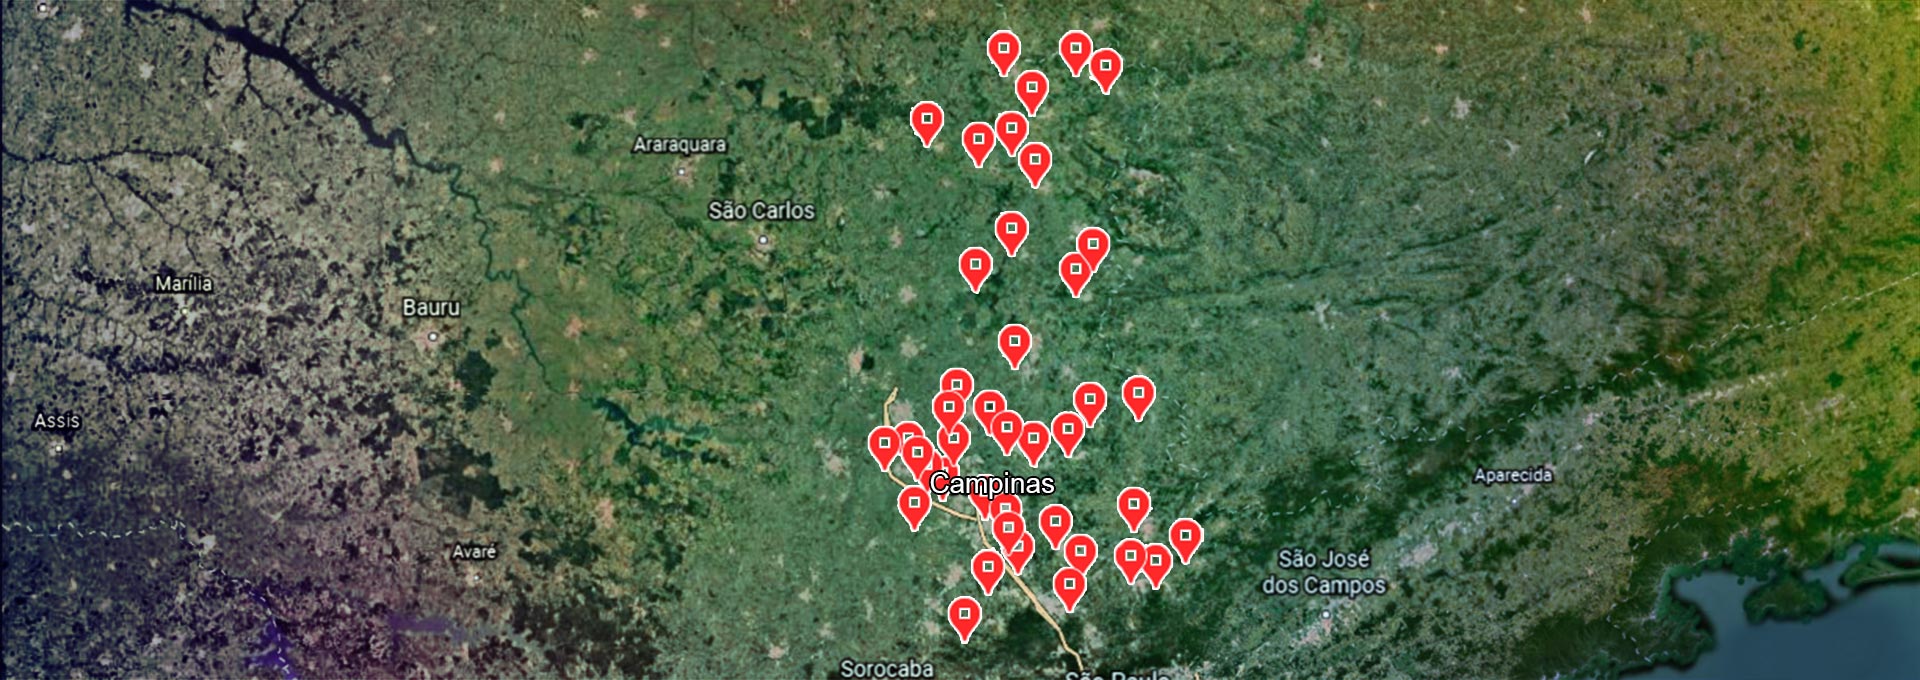 audiodescrição: ilustração colorida de um mapa da região de campinas com as cidades que são atendidas pelos diagnósticos via Unicamp marcadas